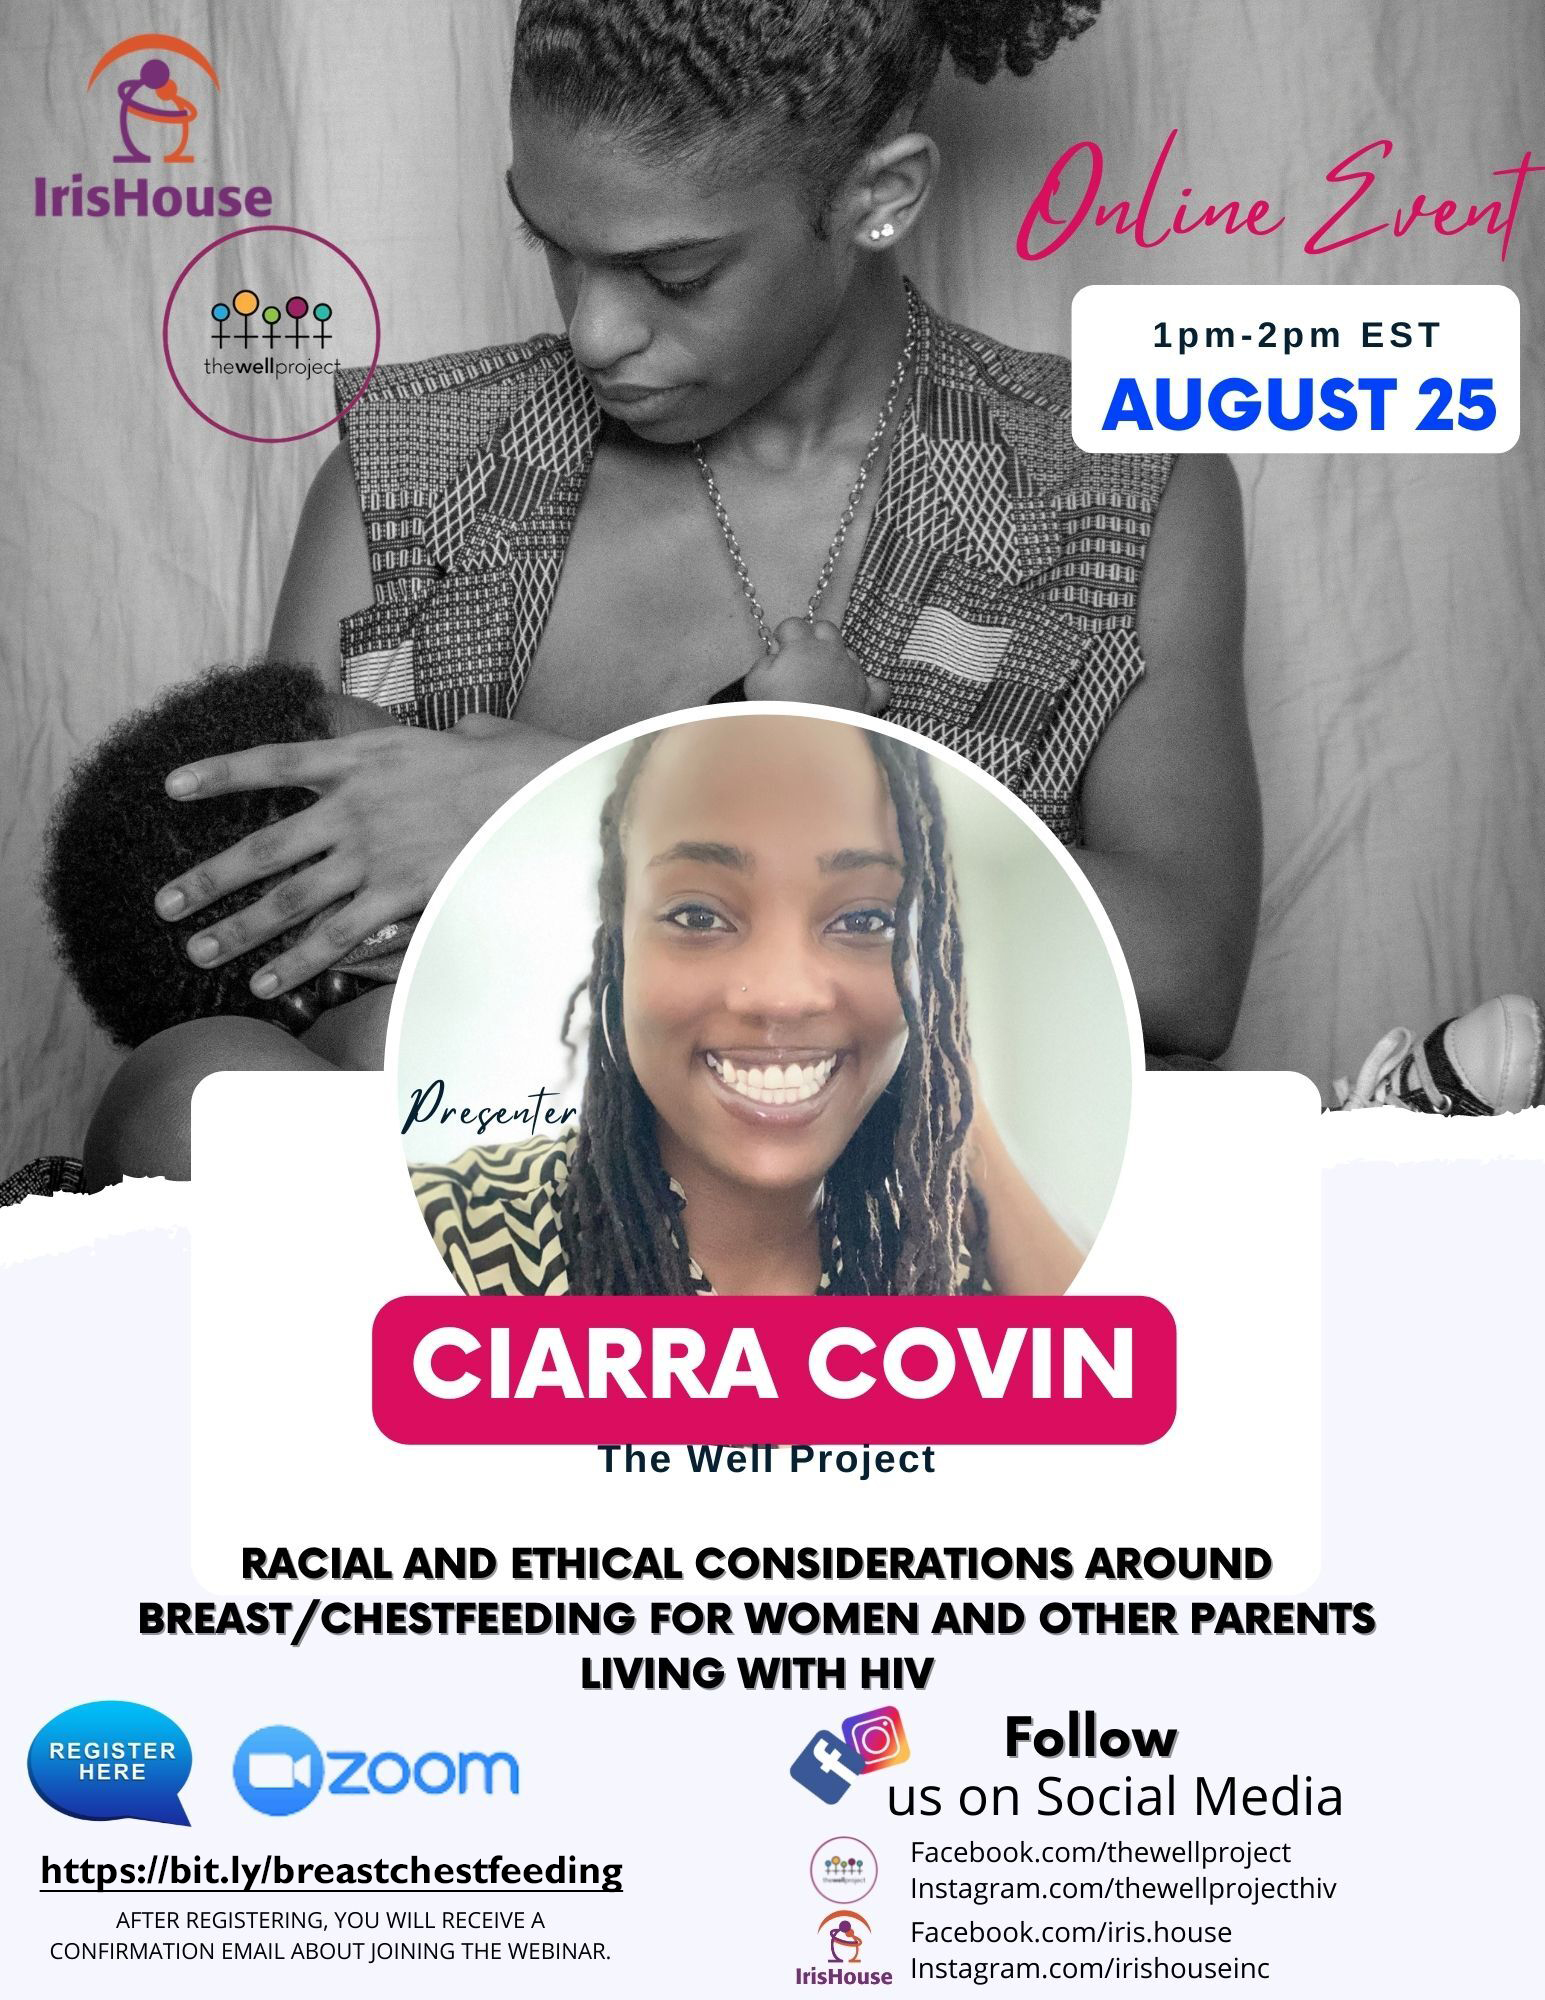 Flyer for August 25 Breast/Chestfeeding webinar.